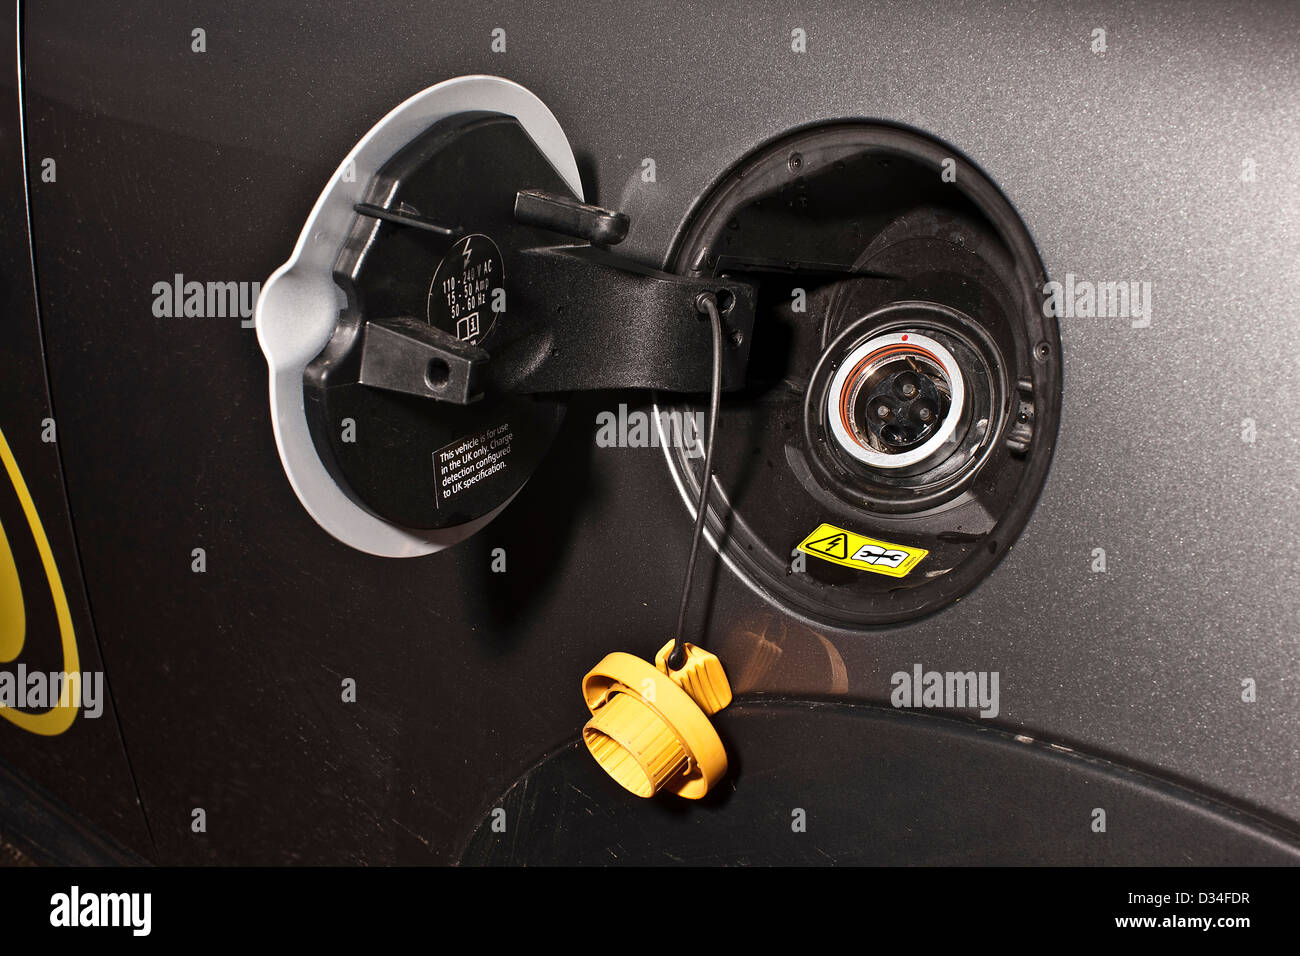 Ladebuchse zum Aufladen der BMW elektrische Mini E-Auto angetrieben  Stockfotografie - Alamy